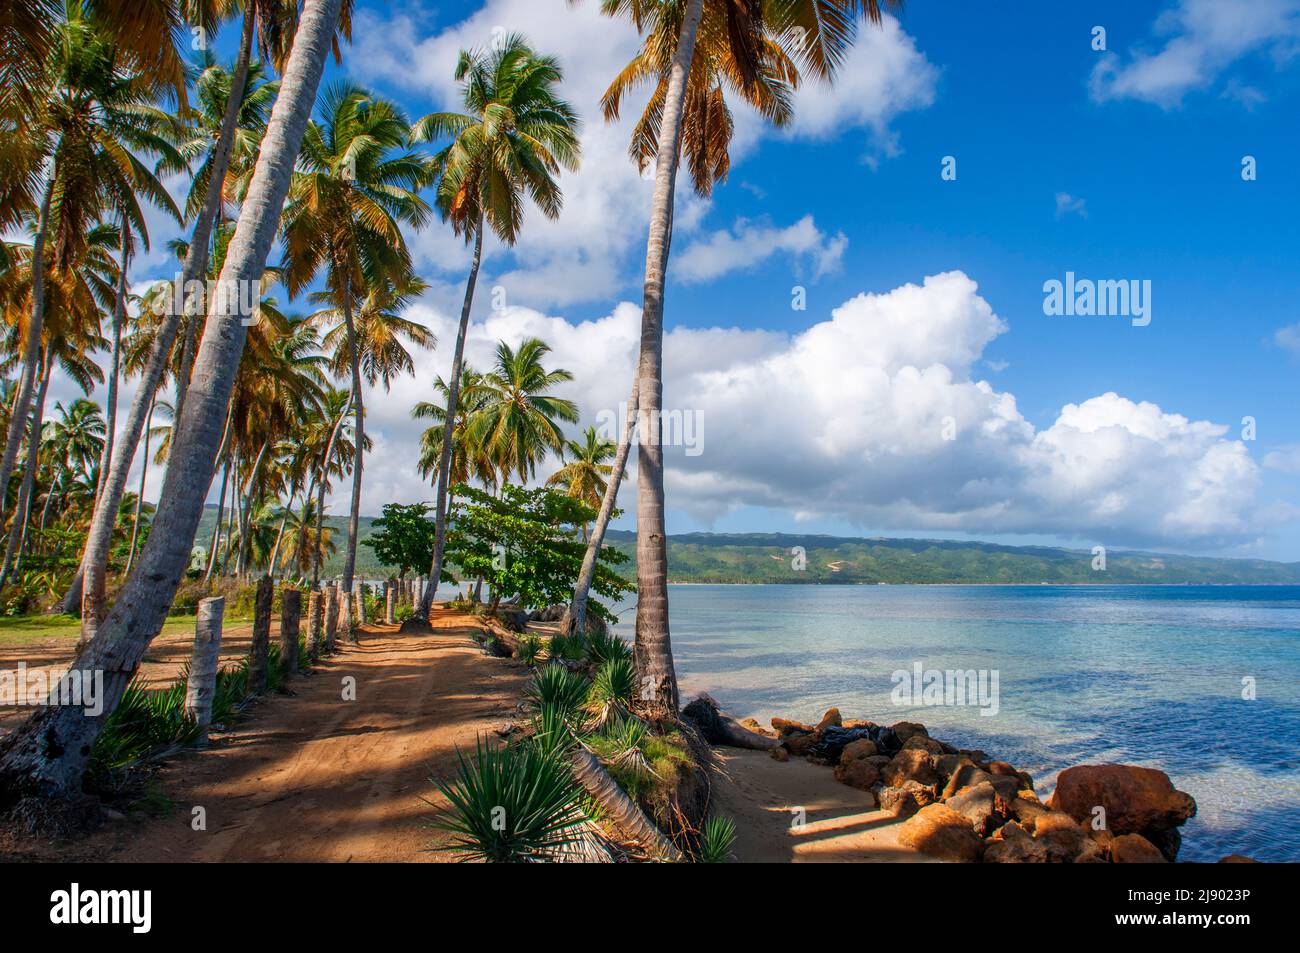 Playa bonita en la península de Samaná en República Dominicana cerca de la ciudad de Las Terrenas. Playa Bonita, como su nombre indica, es un hermoso lugar Foto de stock